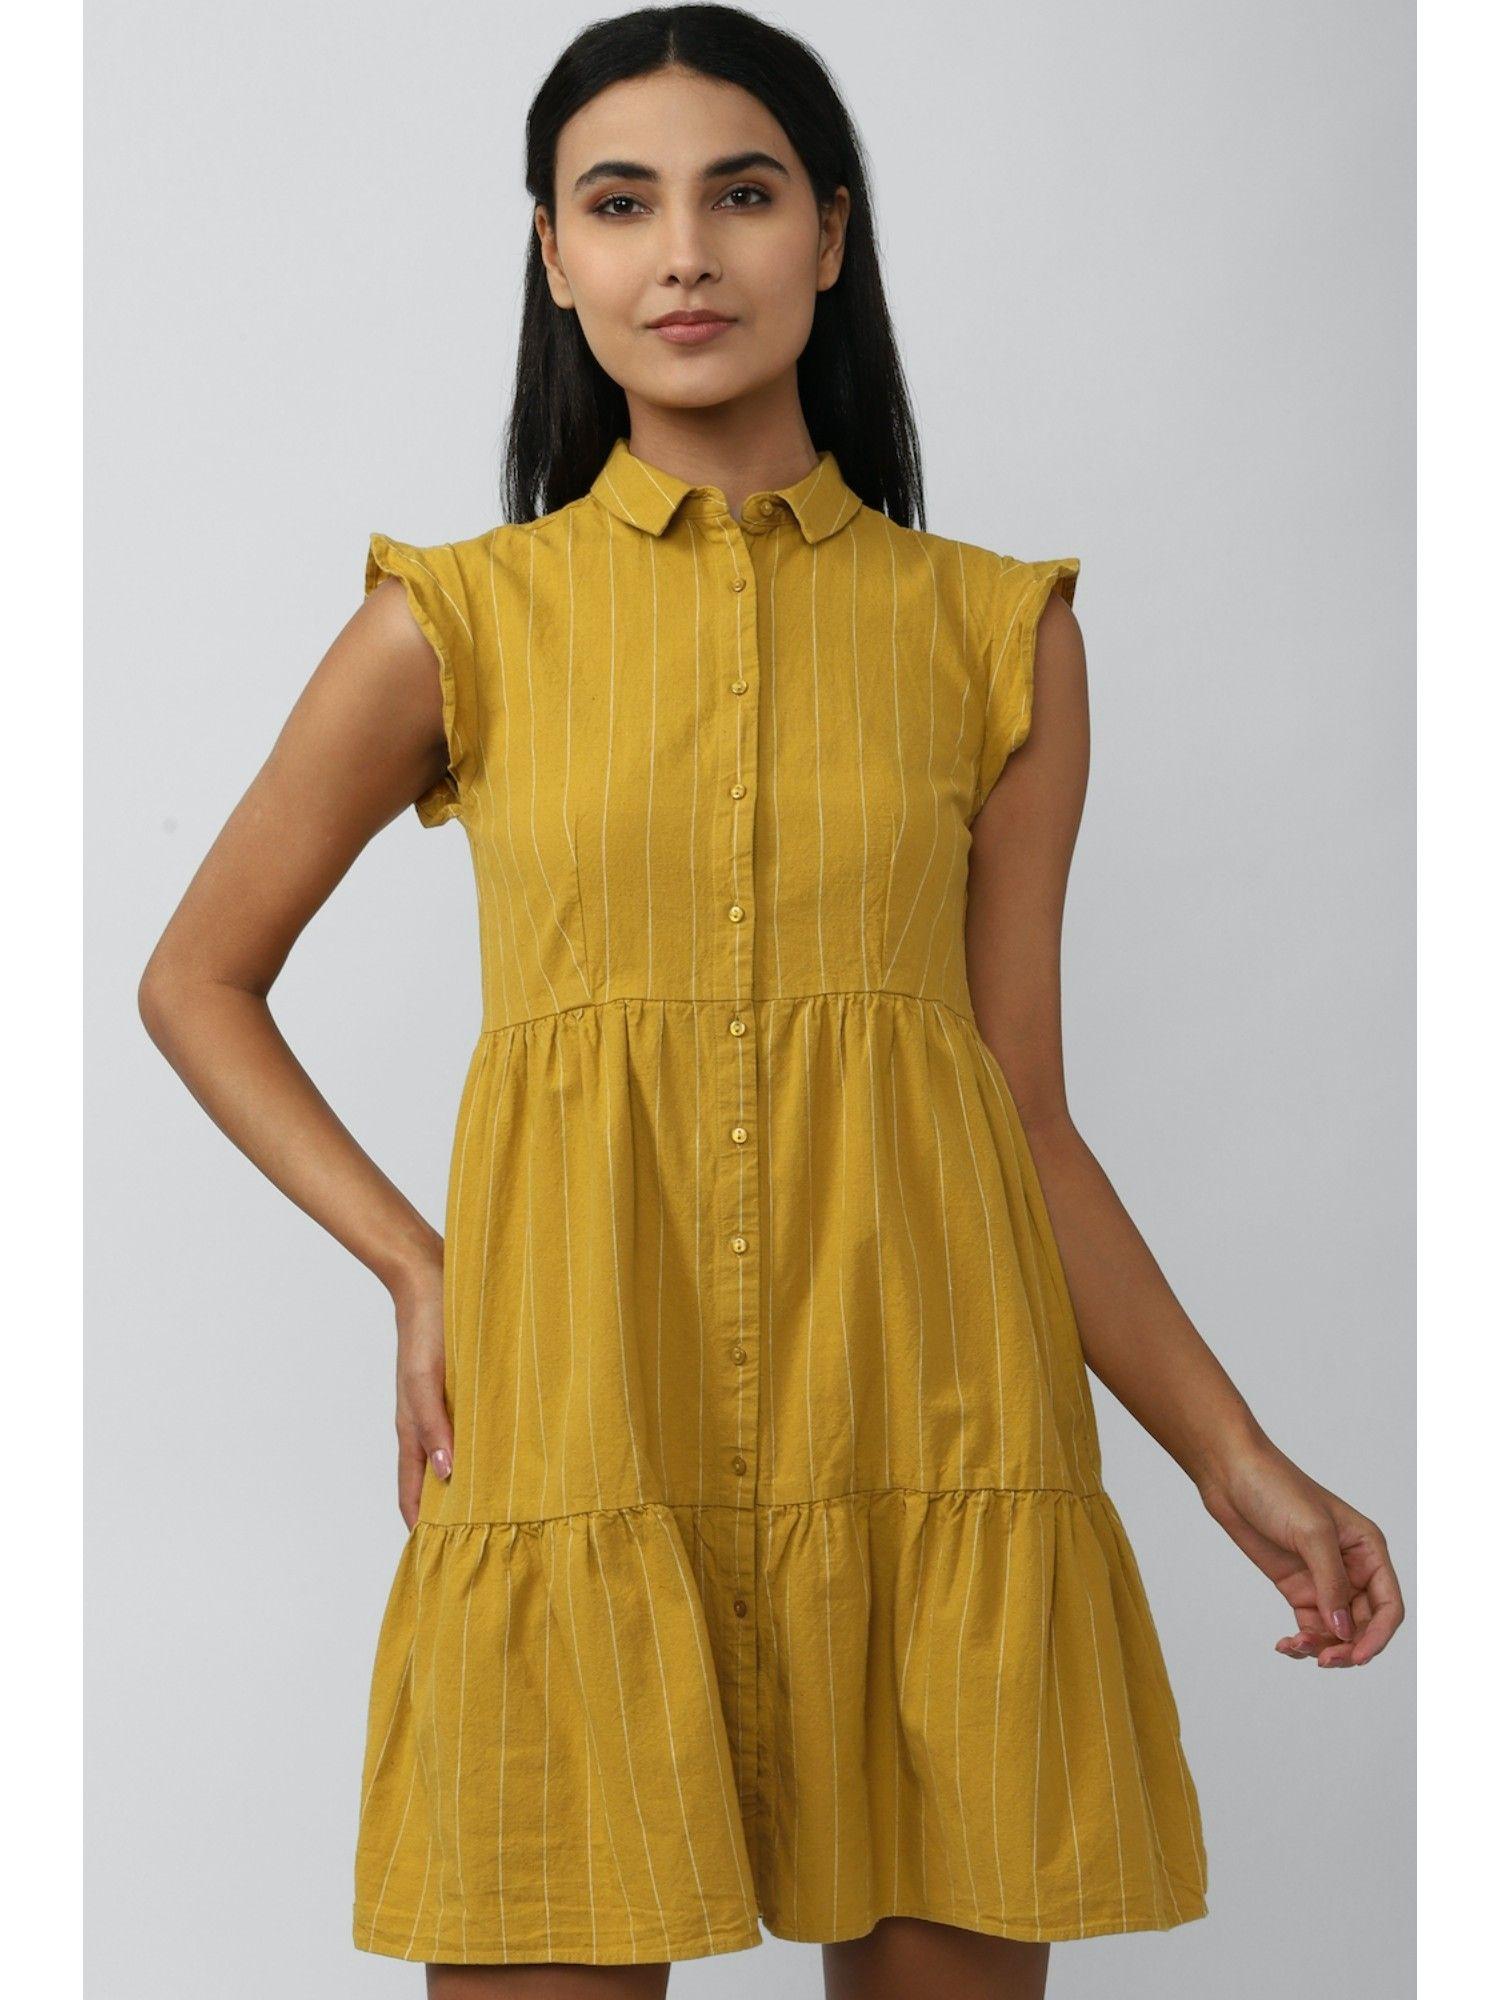 stripes-yellow-dress